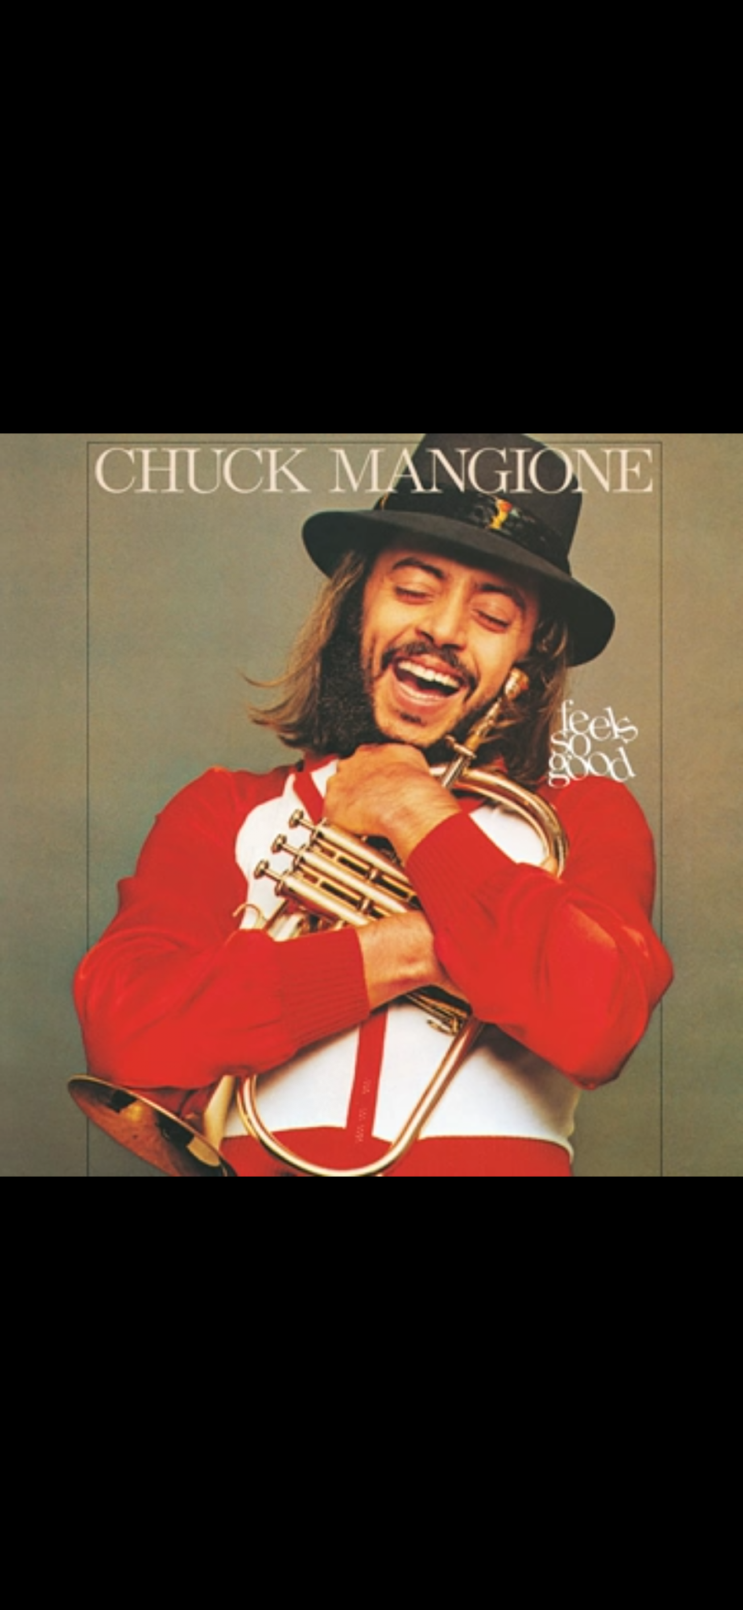 Feel So Good - Chuck Mangione